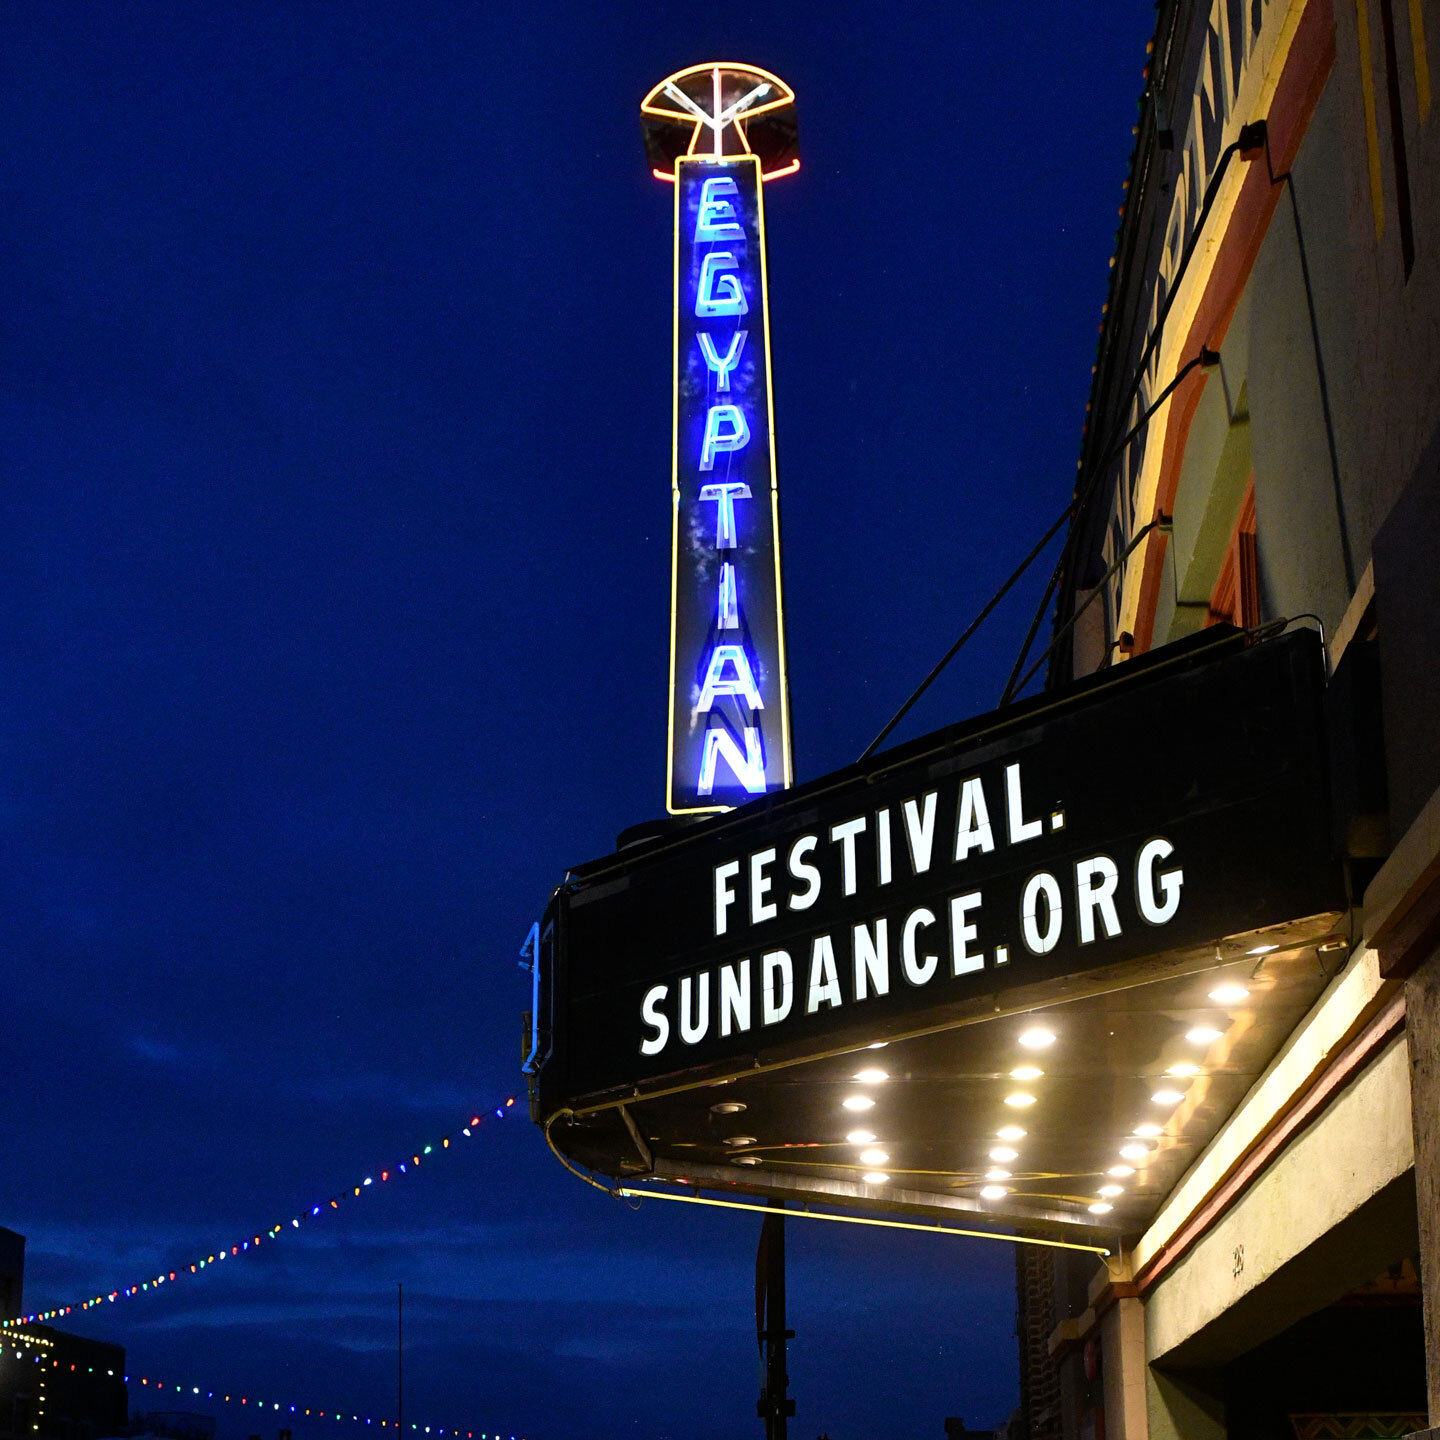 圣丹斯电影节埃及剧院的遮檐上展示着 Festival.Sundance.org